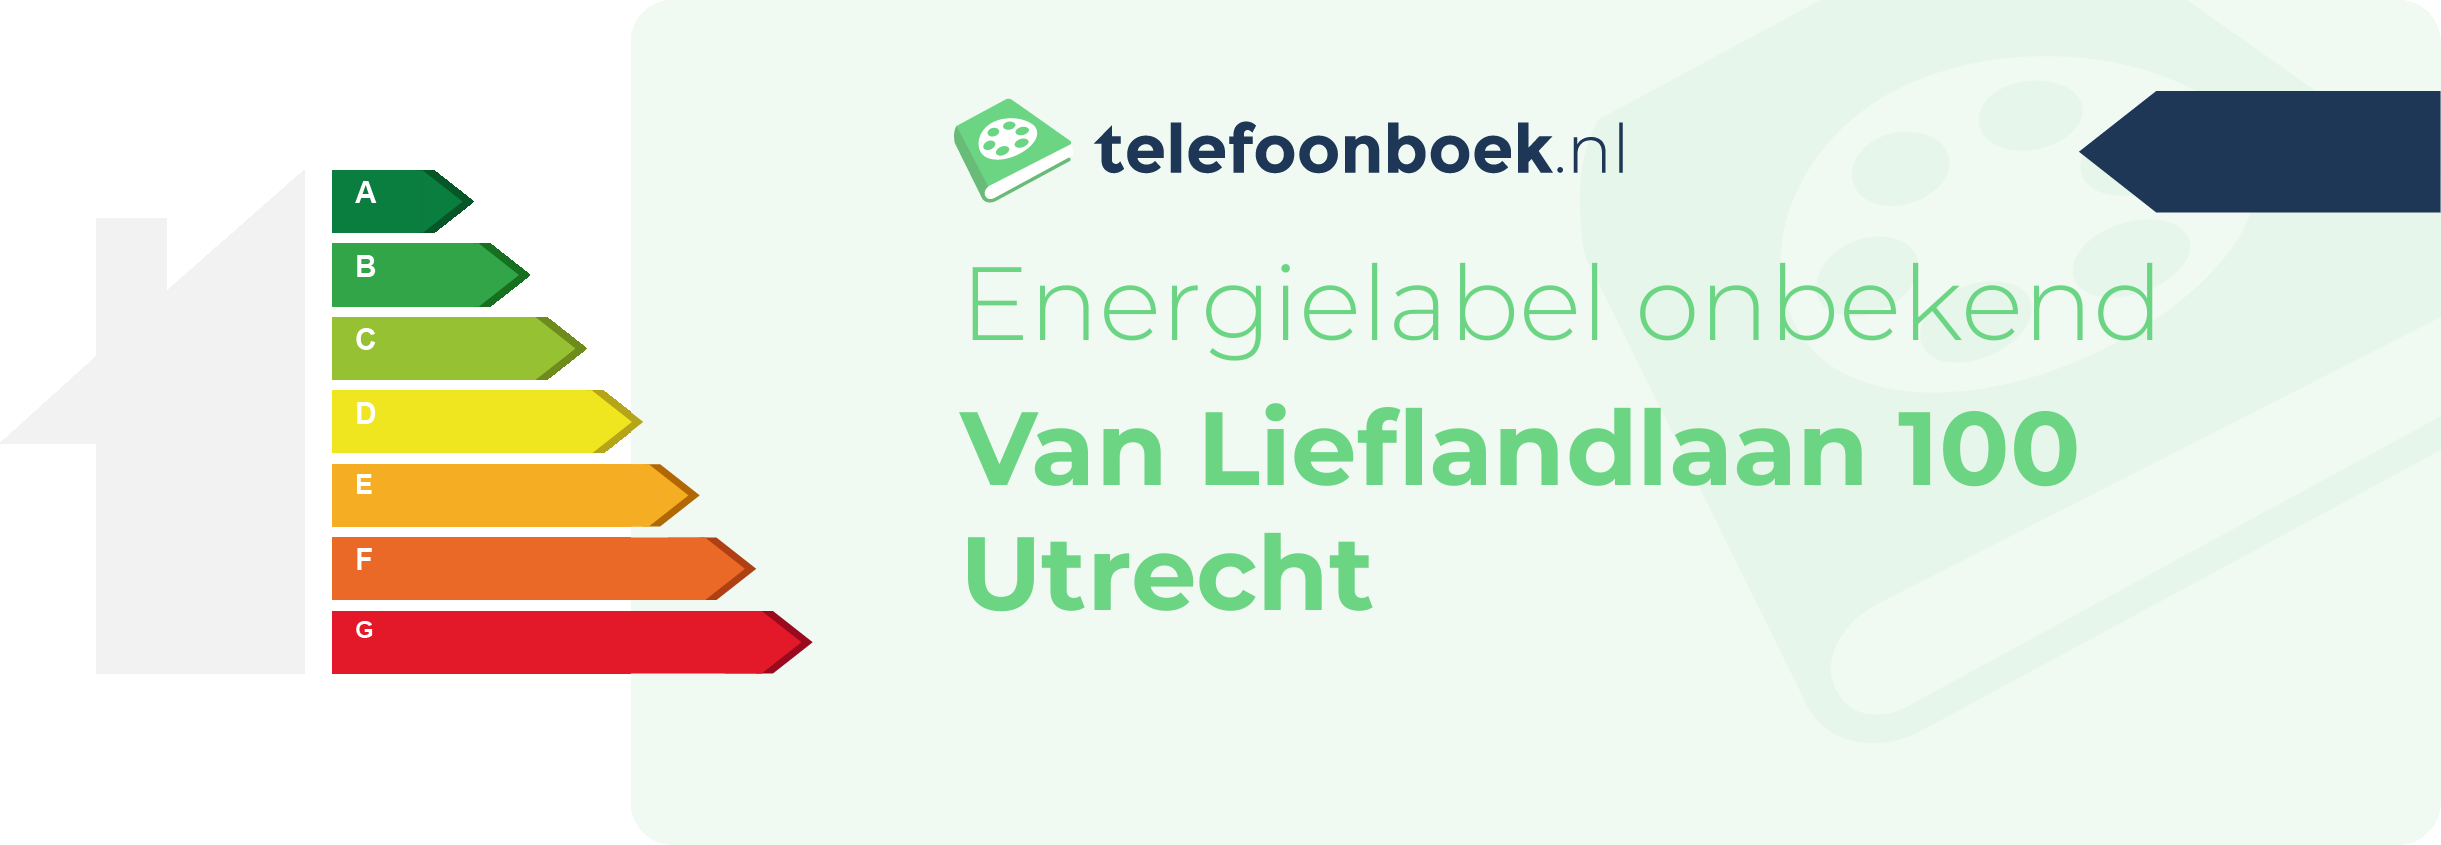 Energielabel Van Lieflandlaan 100 Utrecht